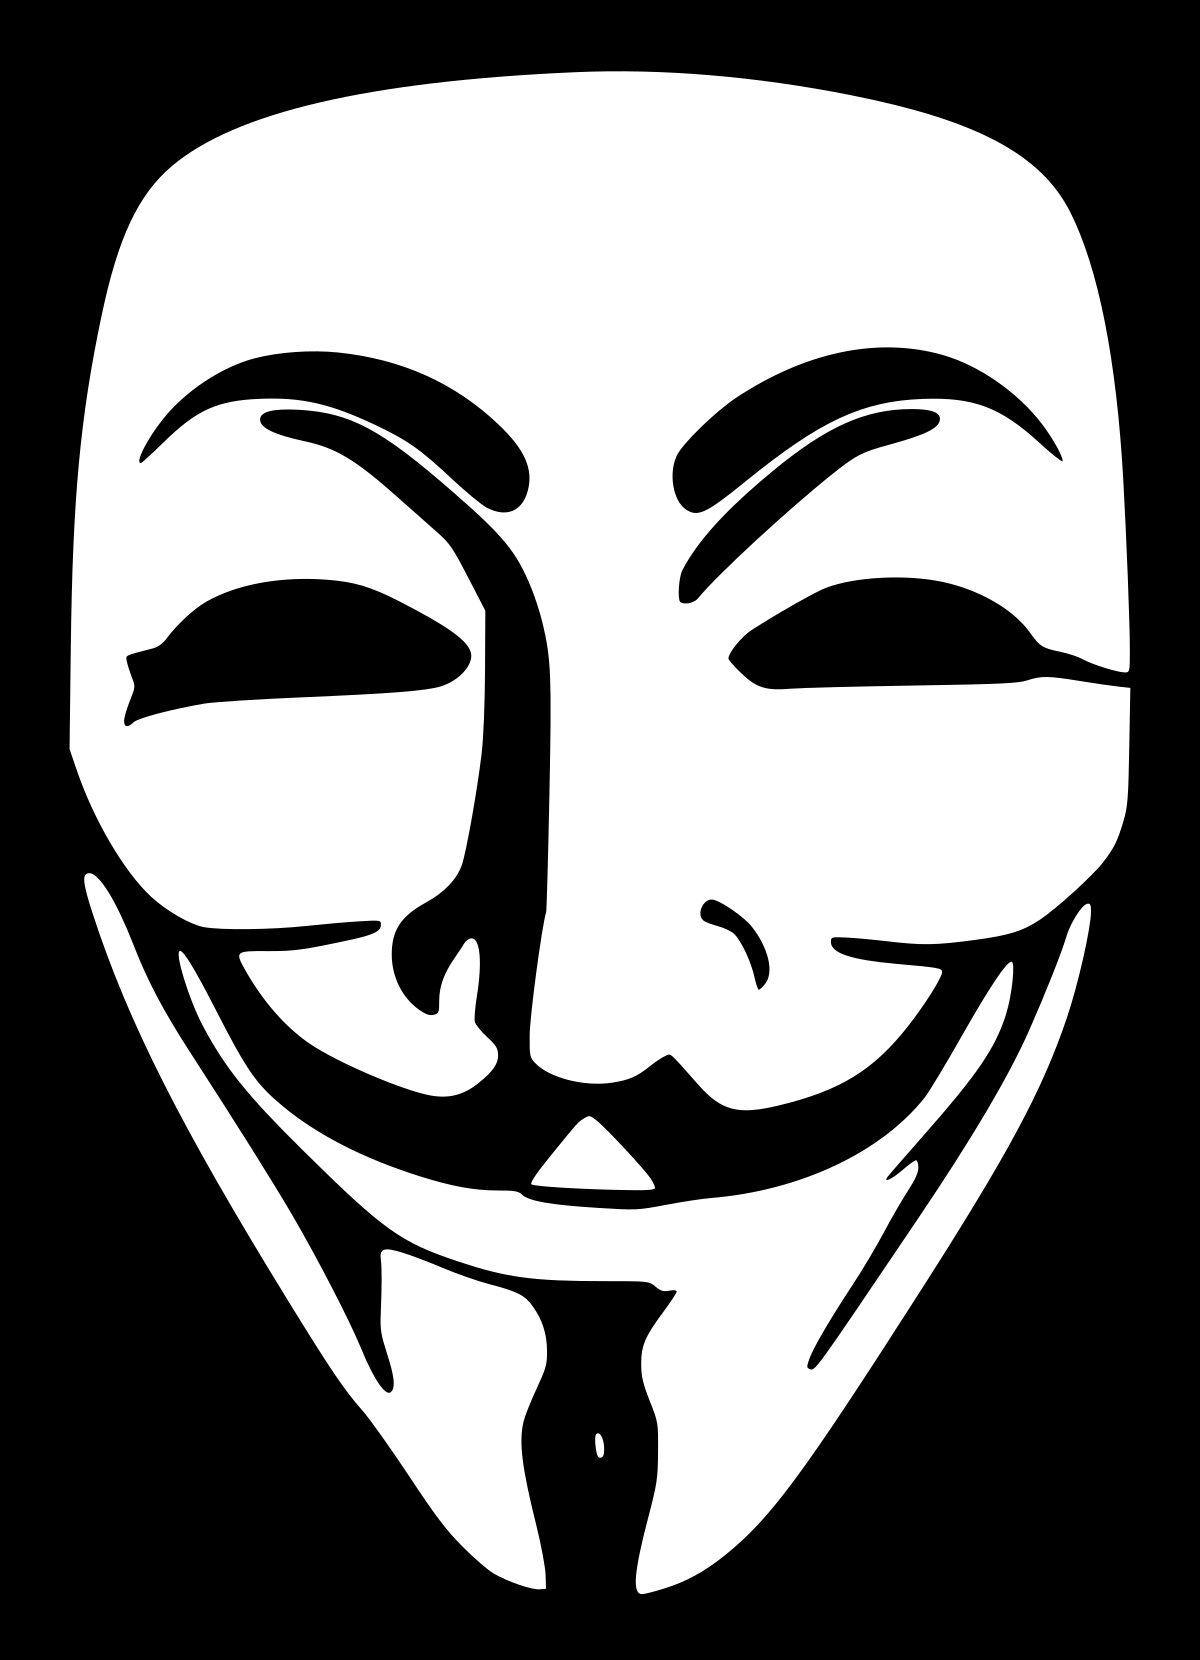 Anonymiss